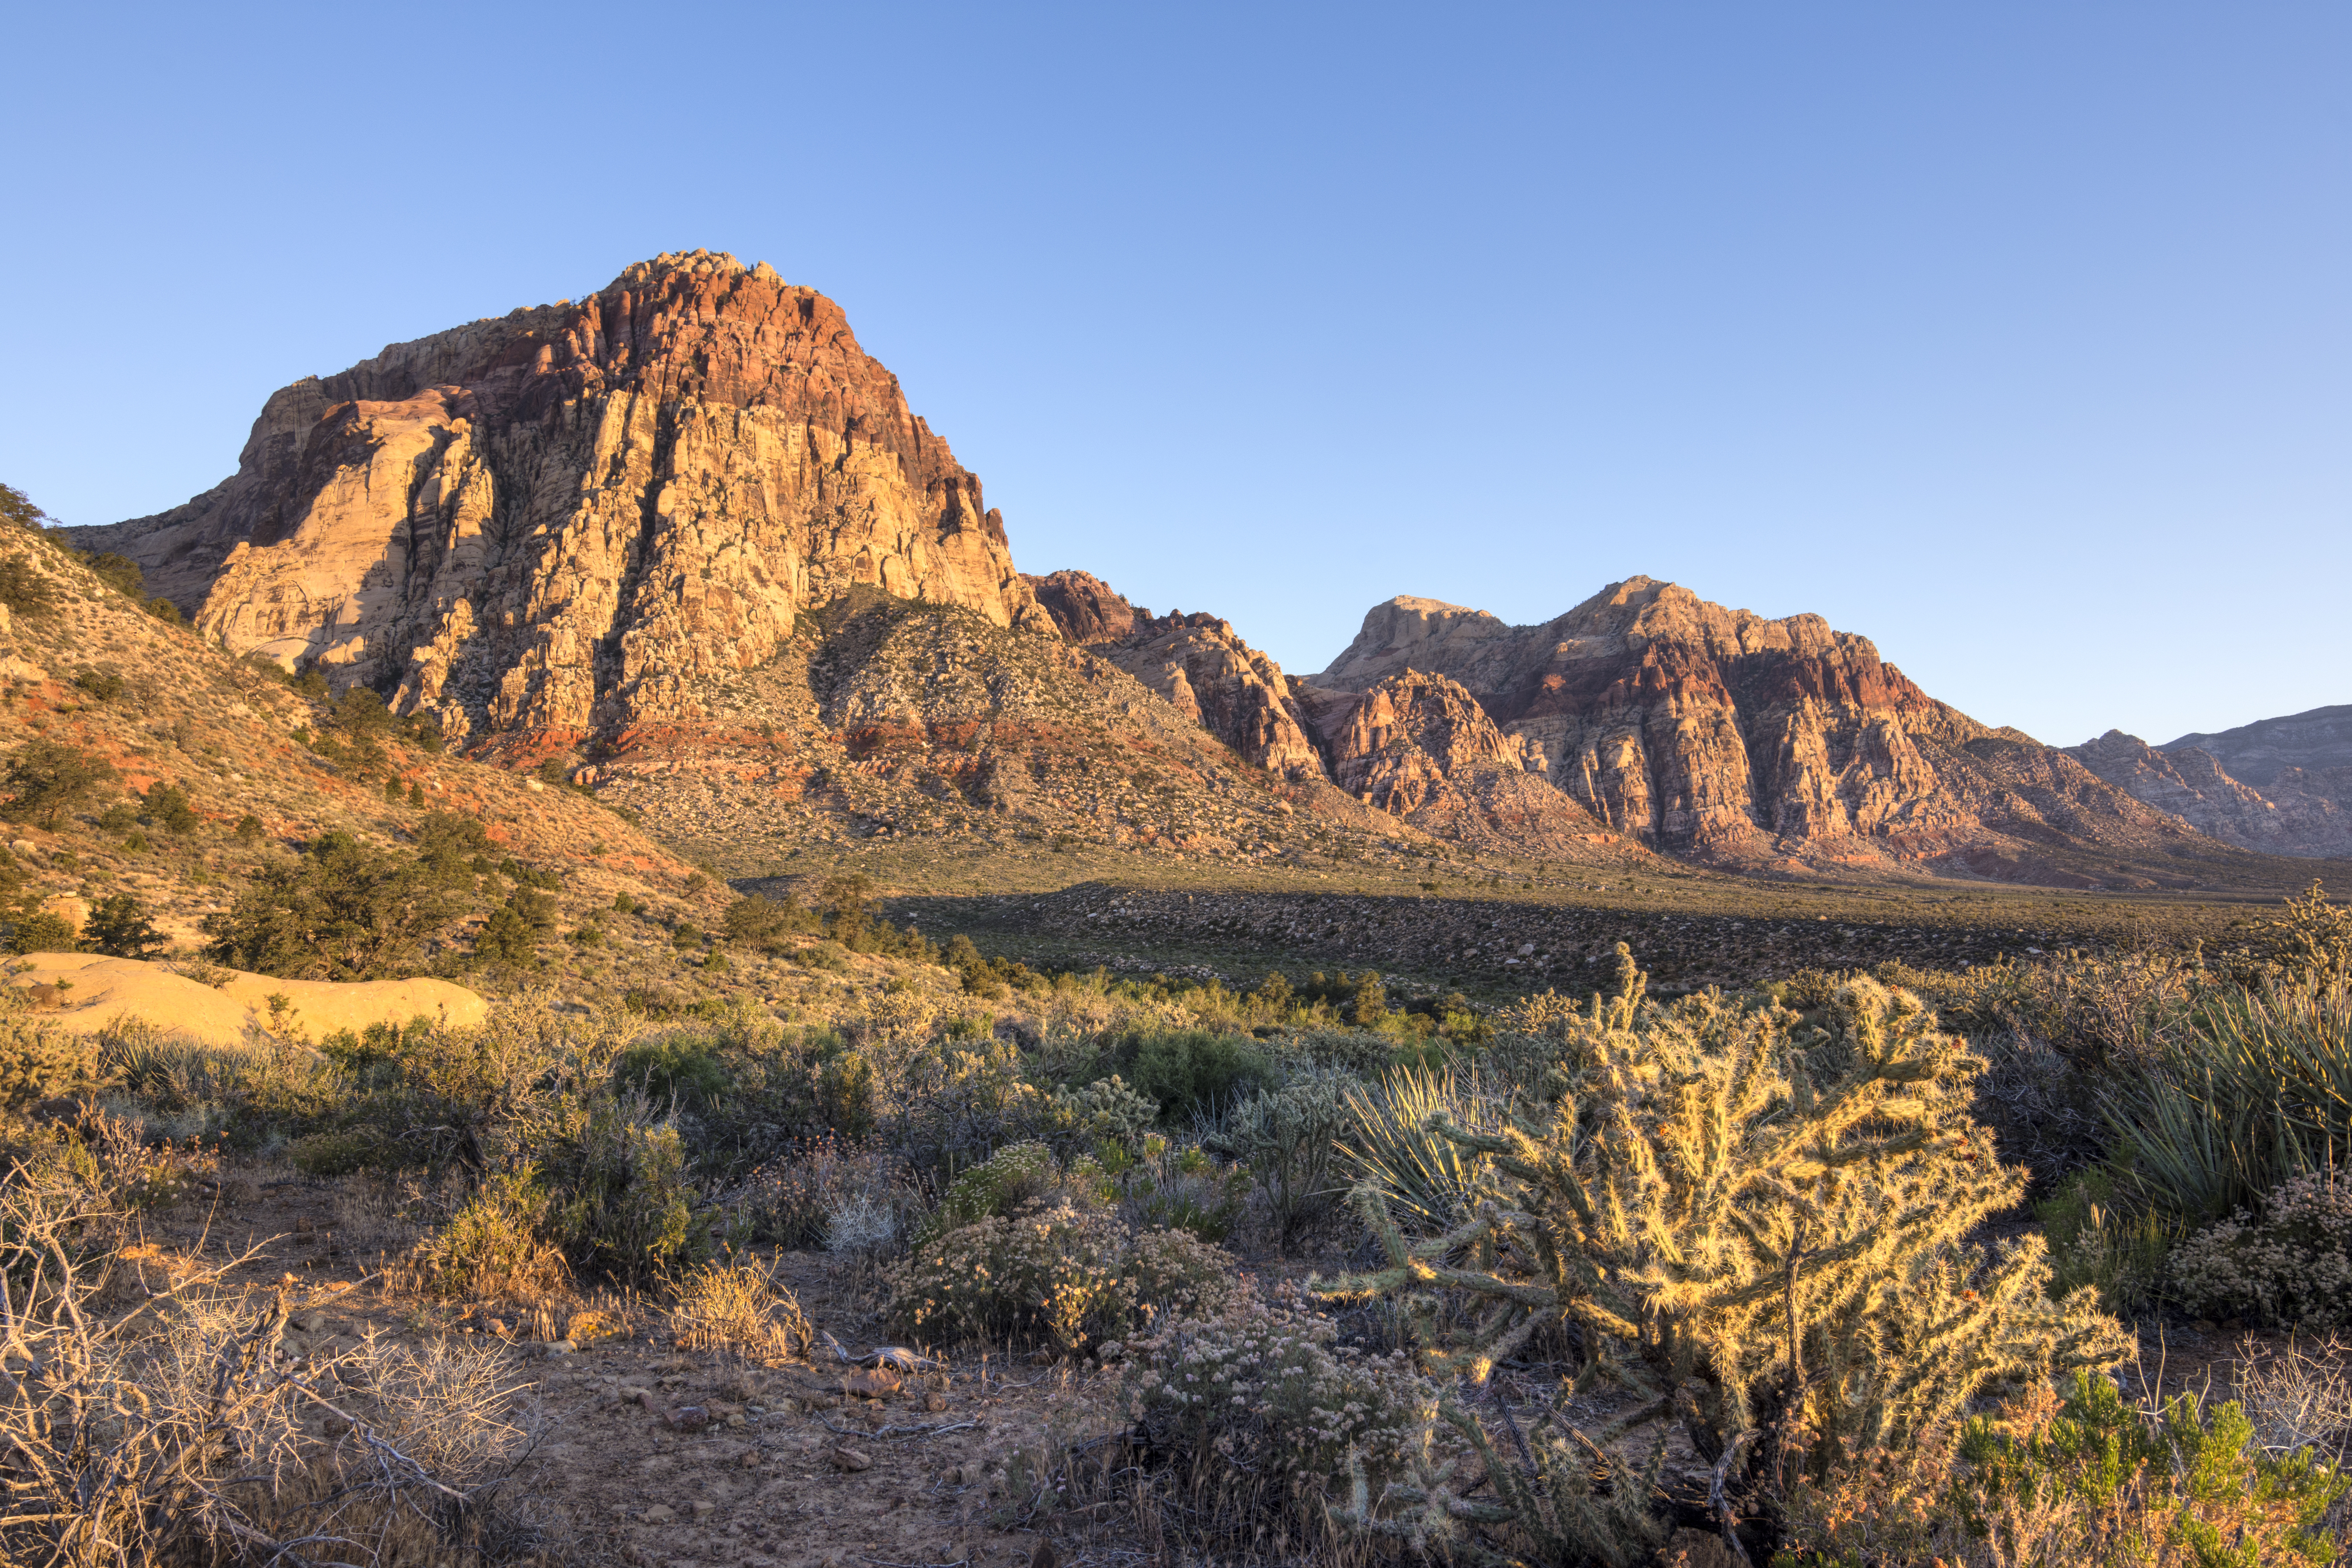 Morning light in harsh desert landscape